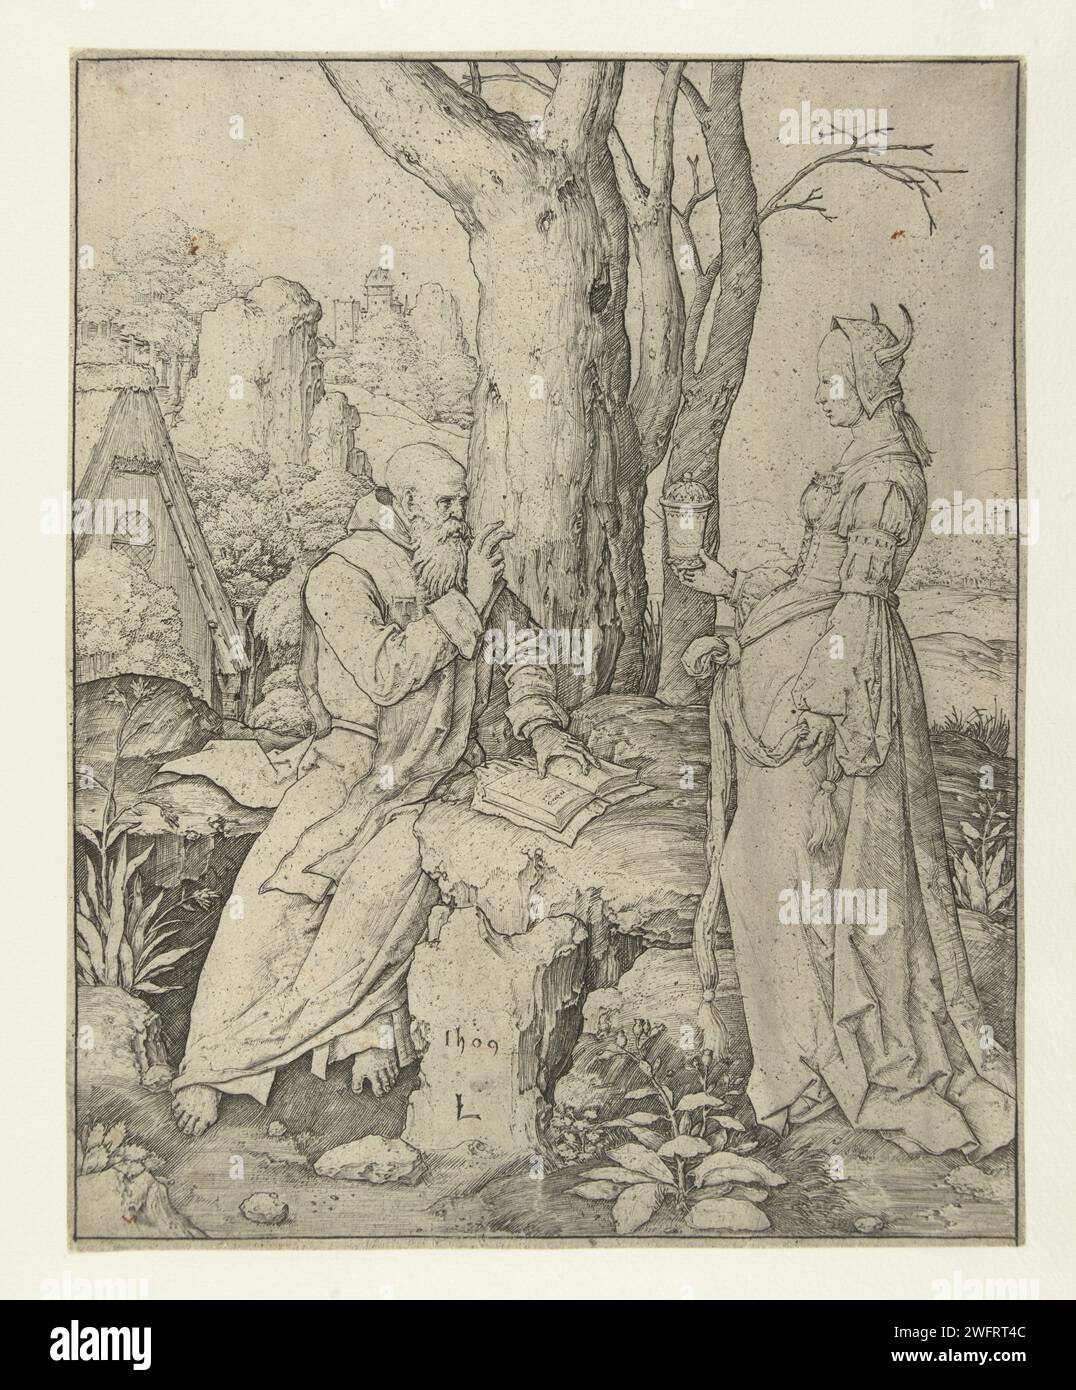 Die Versuchung des Heiligen Antonius, Lucas van Leyden, 1509 Druck Heiliger Antonius sitzend in der Landschaft mit Buch, vor ihm ist eine Frau mit Hörnern auf dem Kopf und einem Topf in der rechten Hand. Niedrige Länder Papiergravur Verführungen von St. Antonius Abt Stockfoto